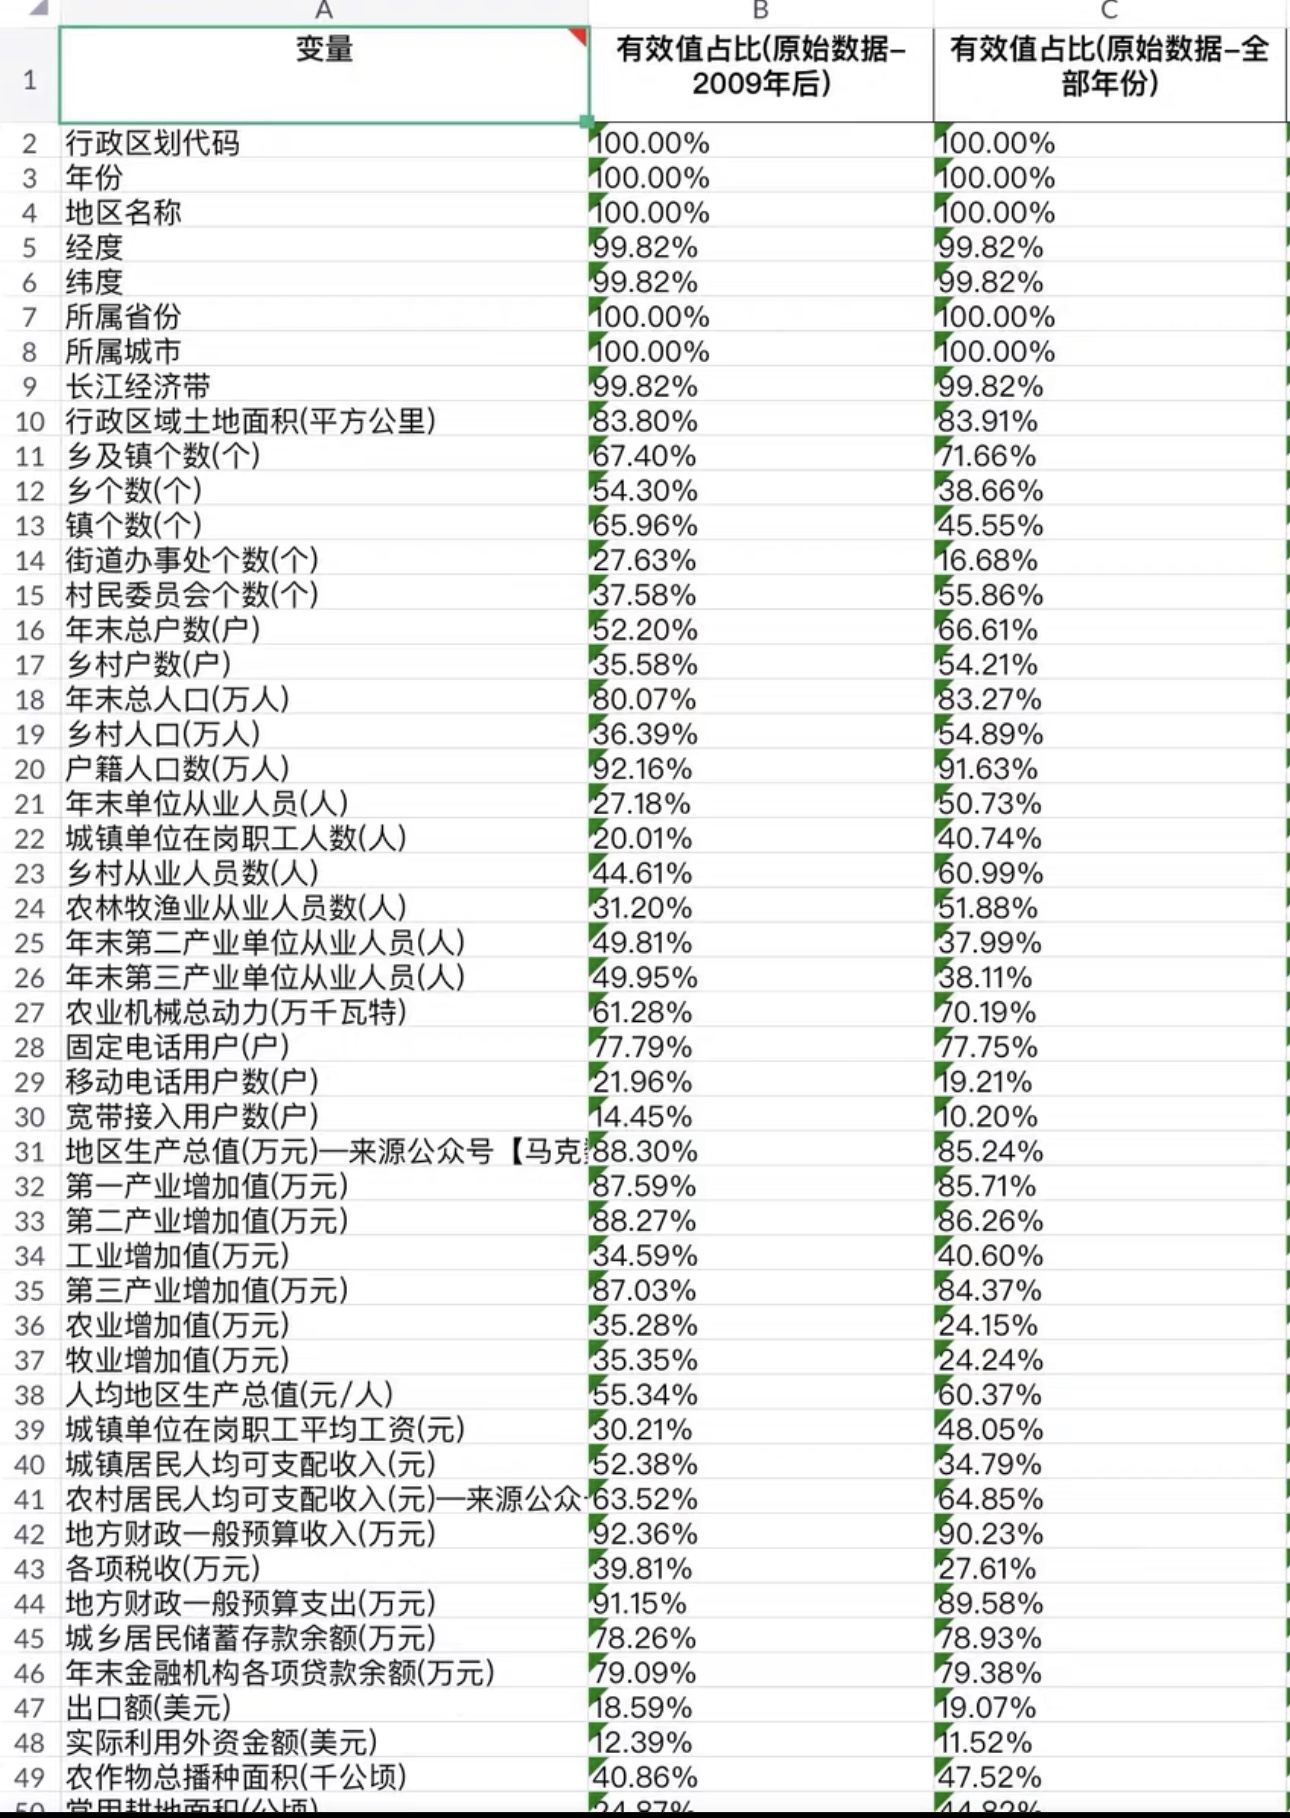 中国县级面板数中国县域数据库数据来源：《中国区域经济统计年鉴